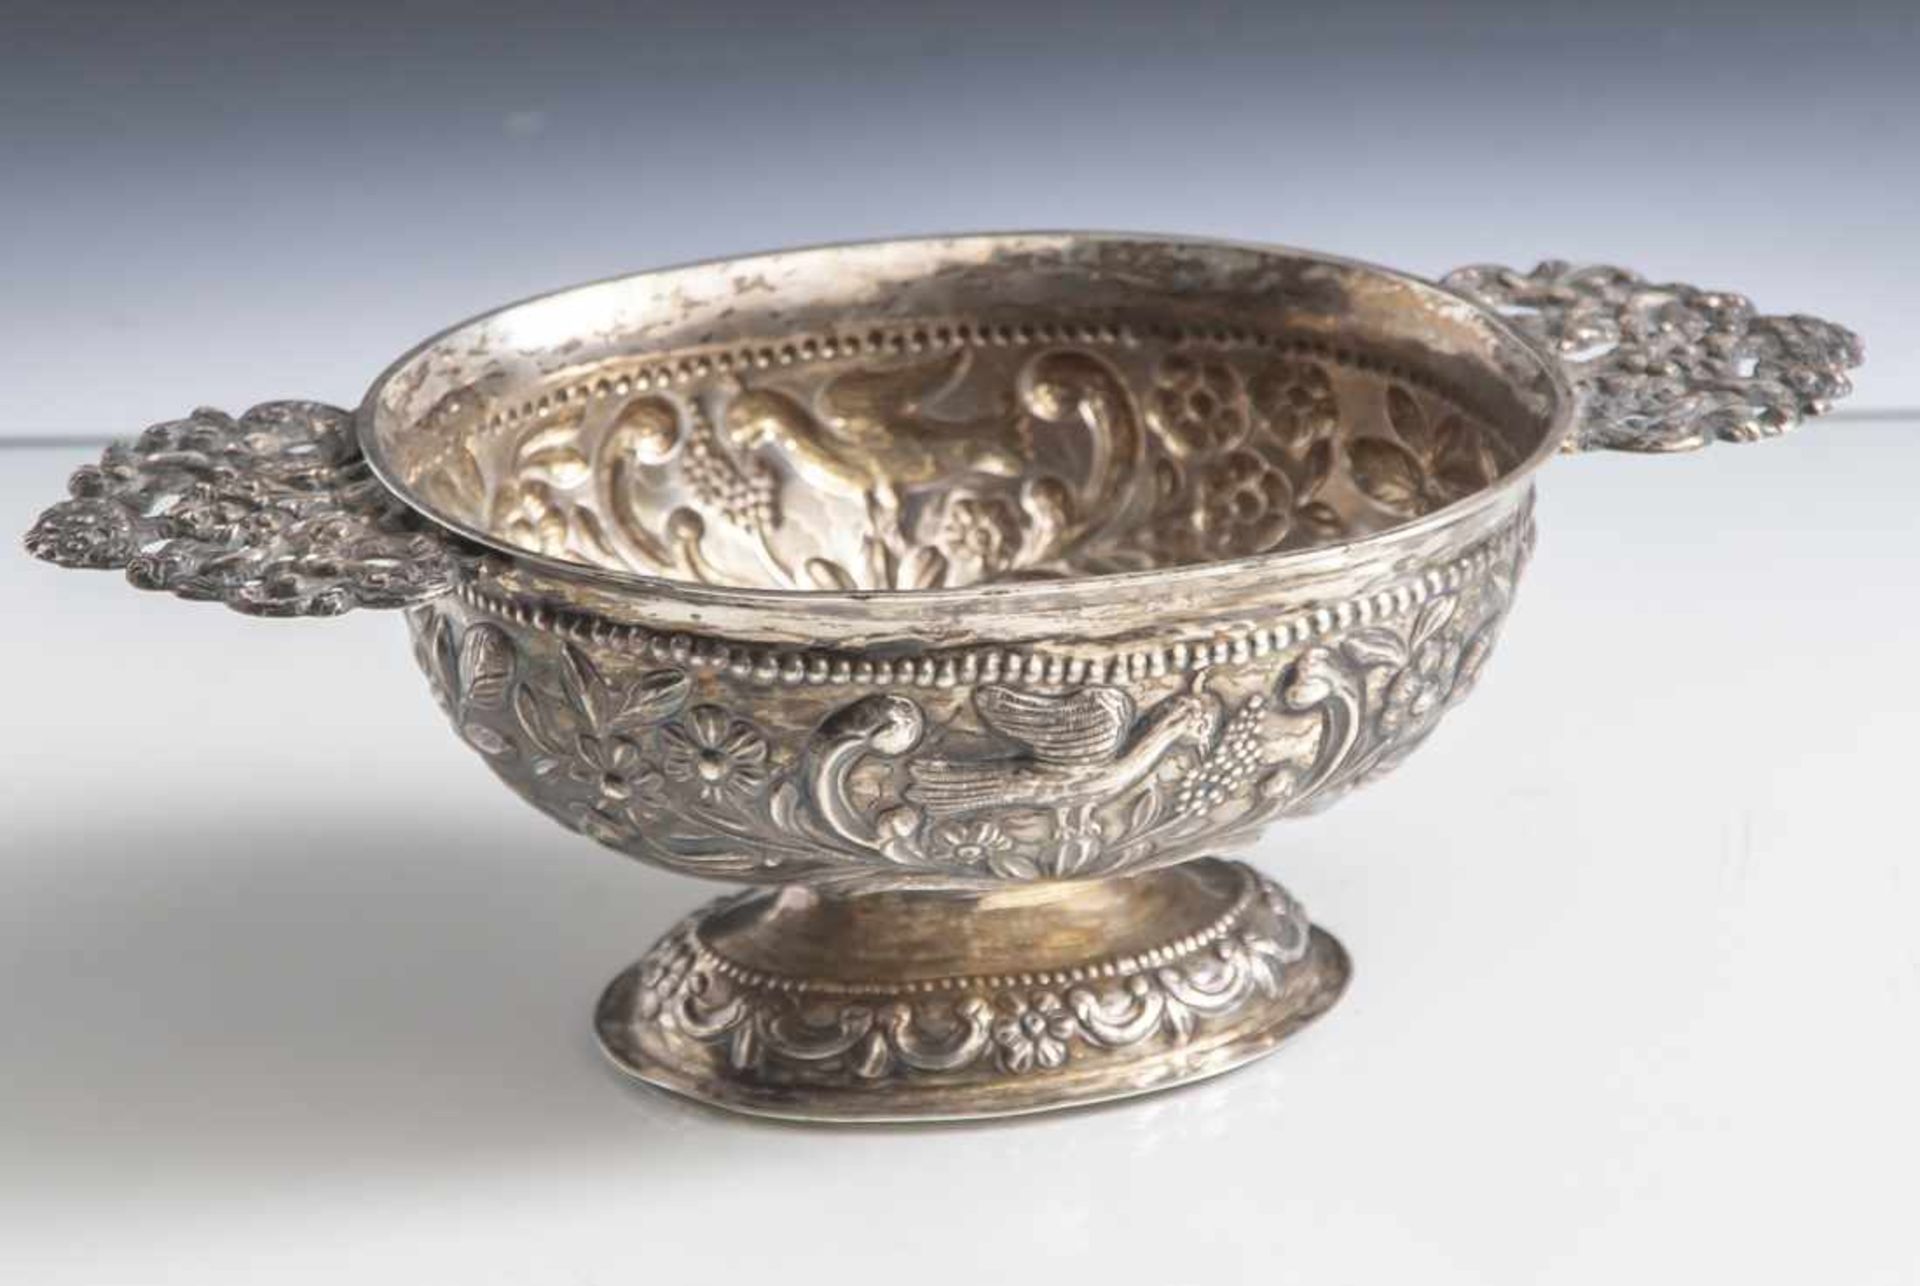 Tazza, Silber, Deutschland, 18. Jahrhundert, gemarkt: 3 Tremulierstriche, u, D, JJS und weitere